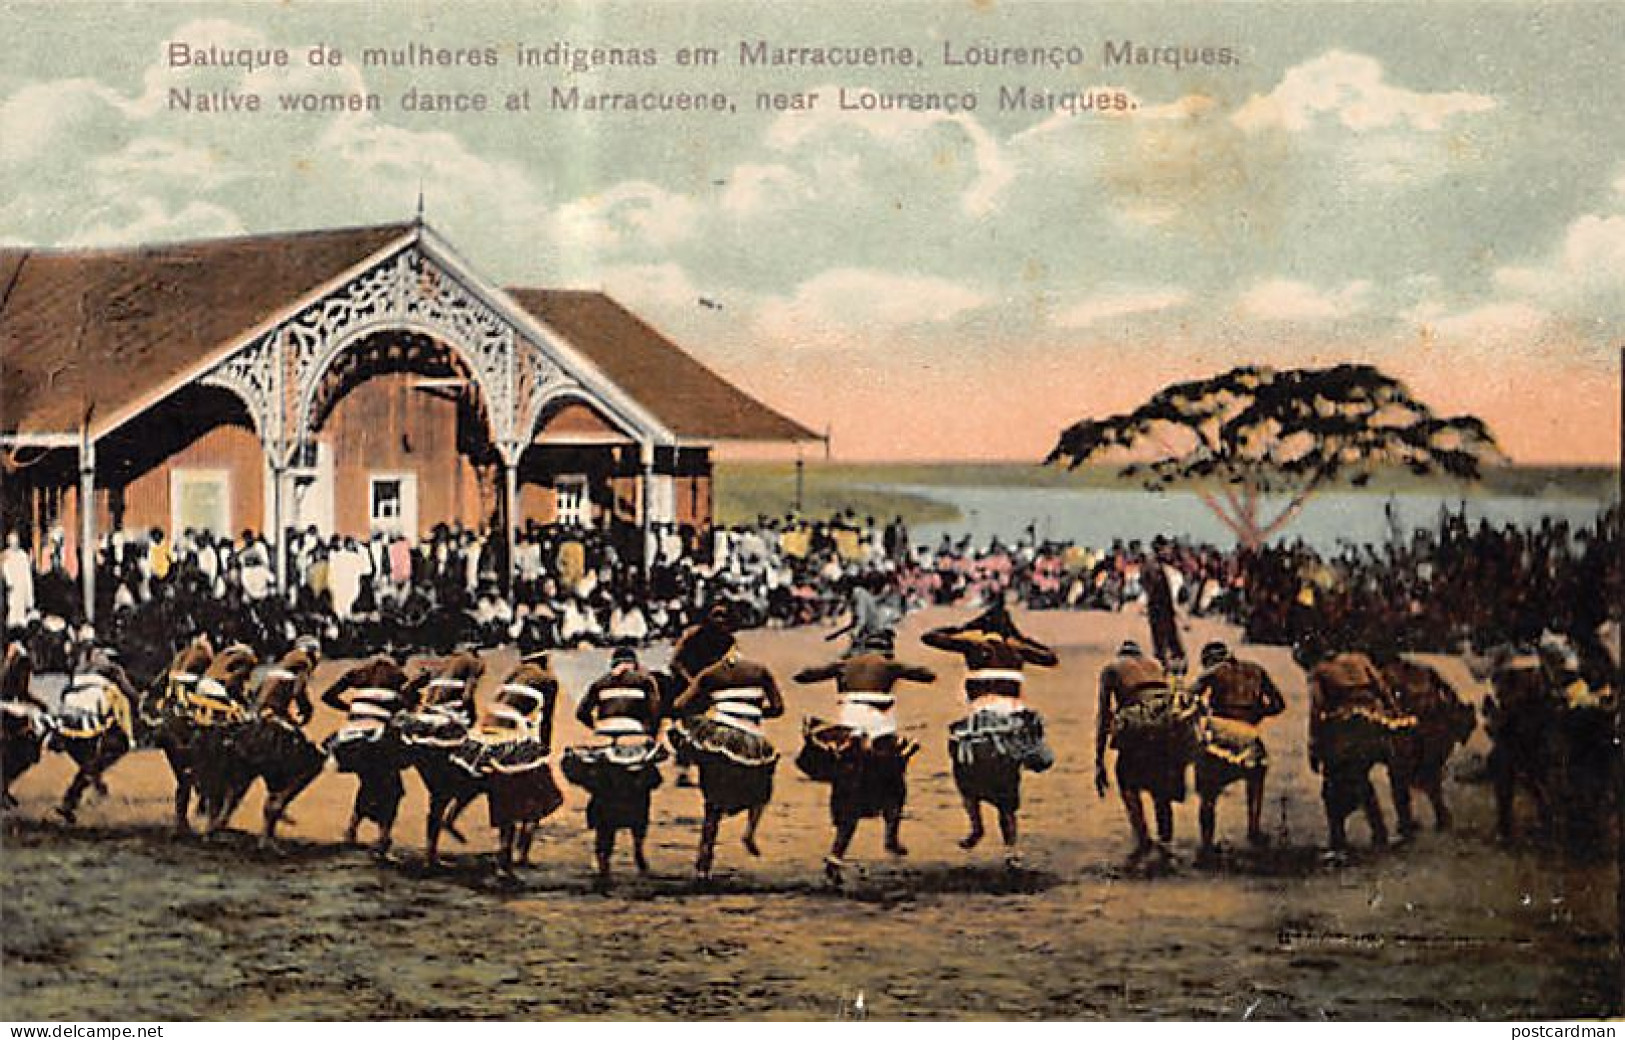 MOÇAMBIQUE Mozambique - Batuque De Mulheres Indigenas Em Marracuene - Native Women Dance At Marracuene - Ed. / Publ. Spa - Mozambico